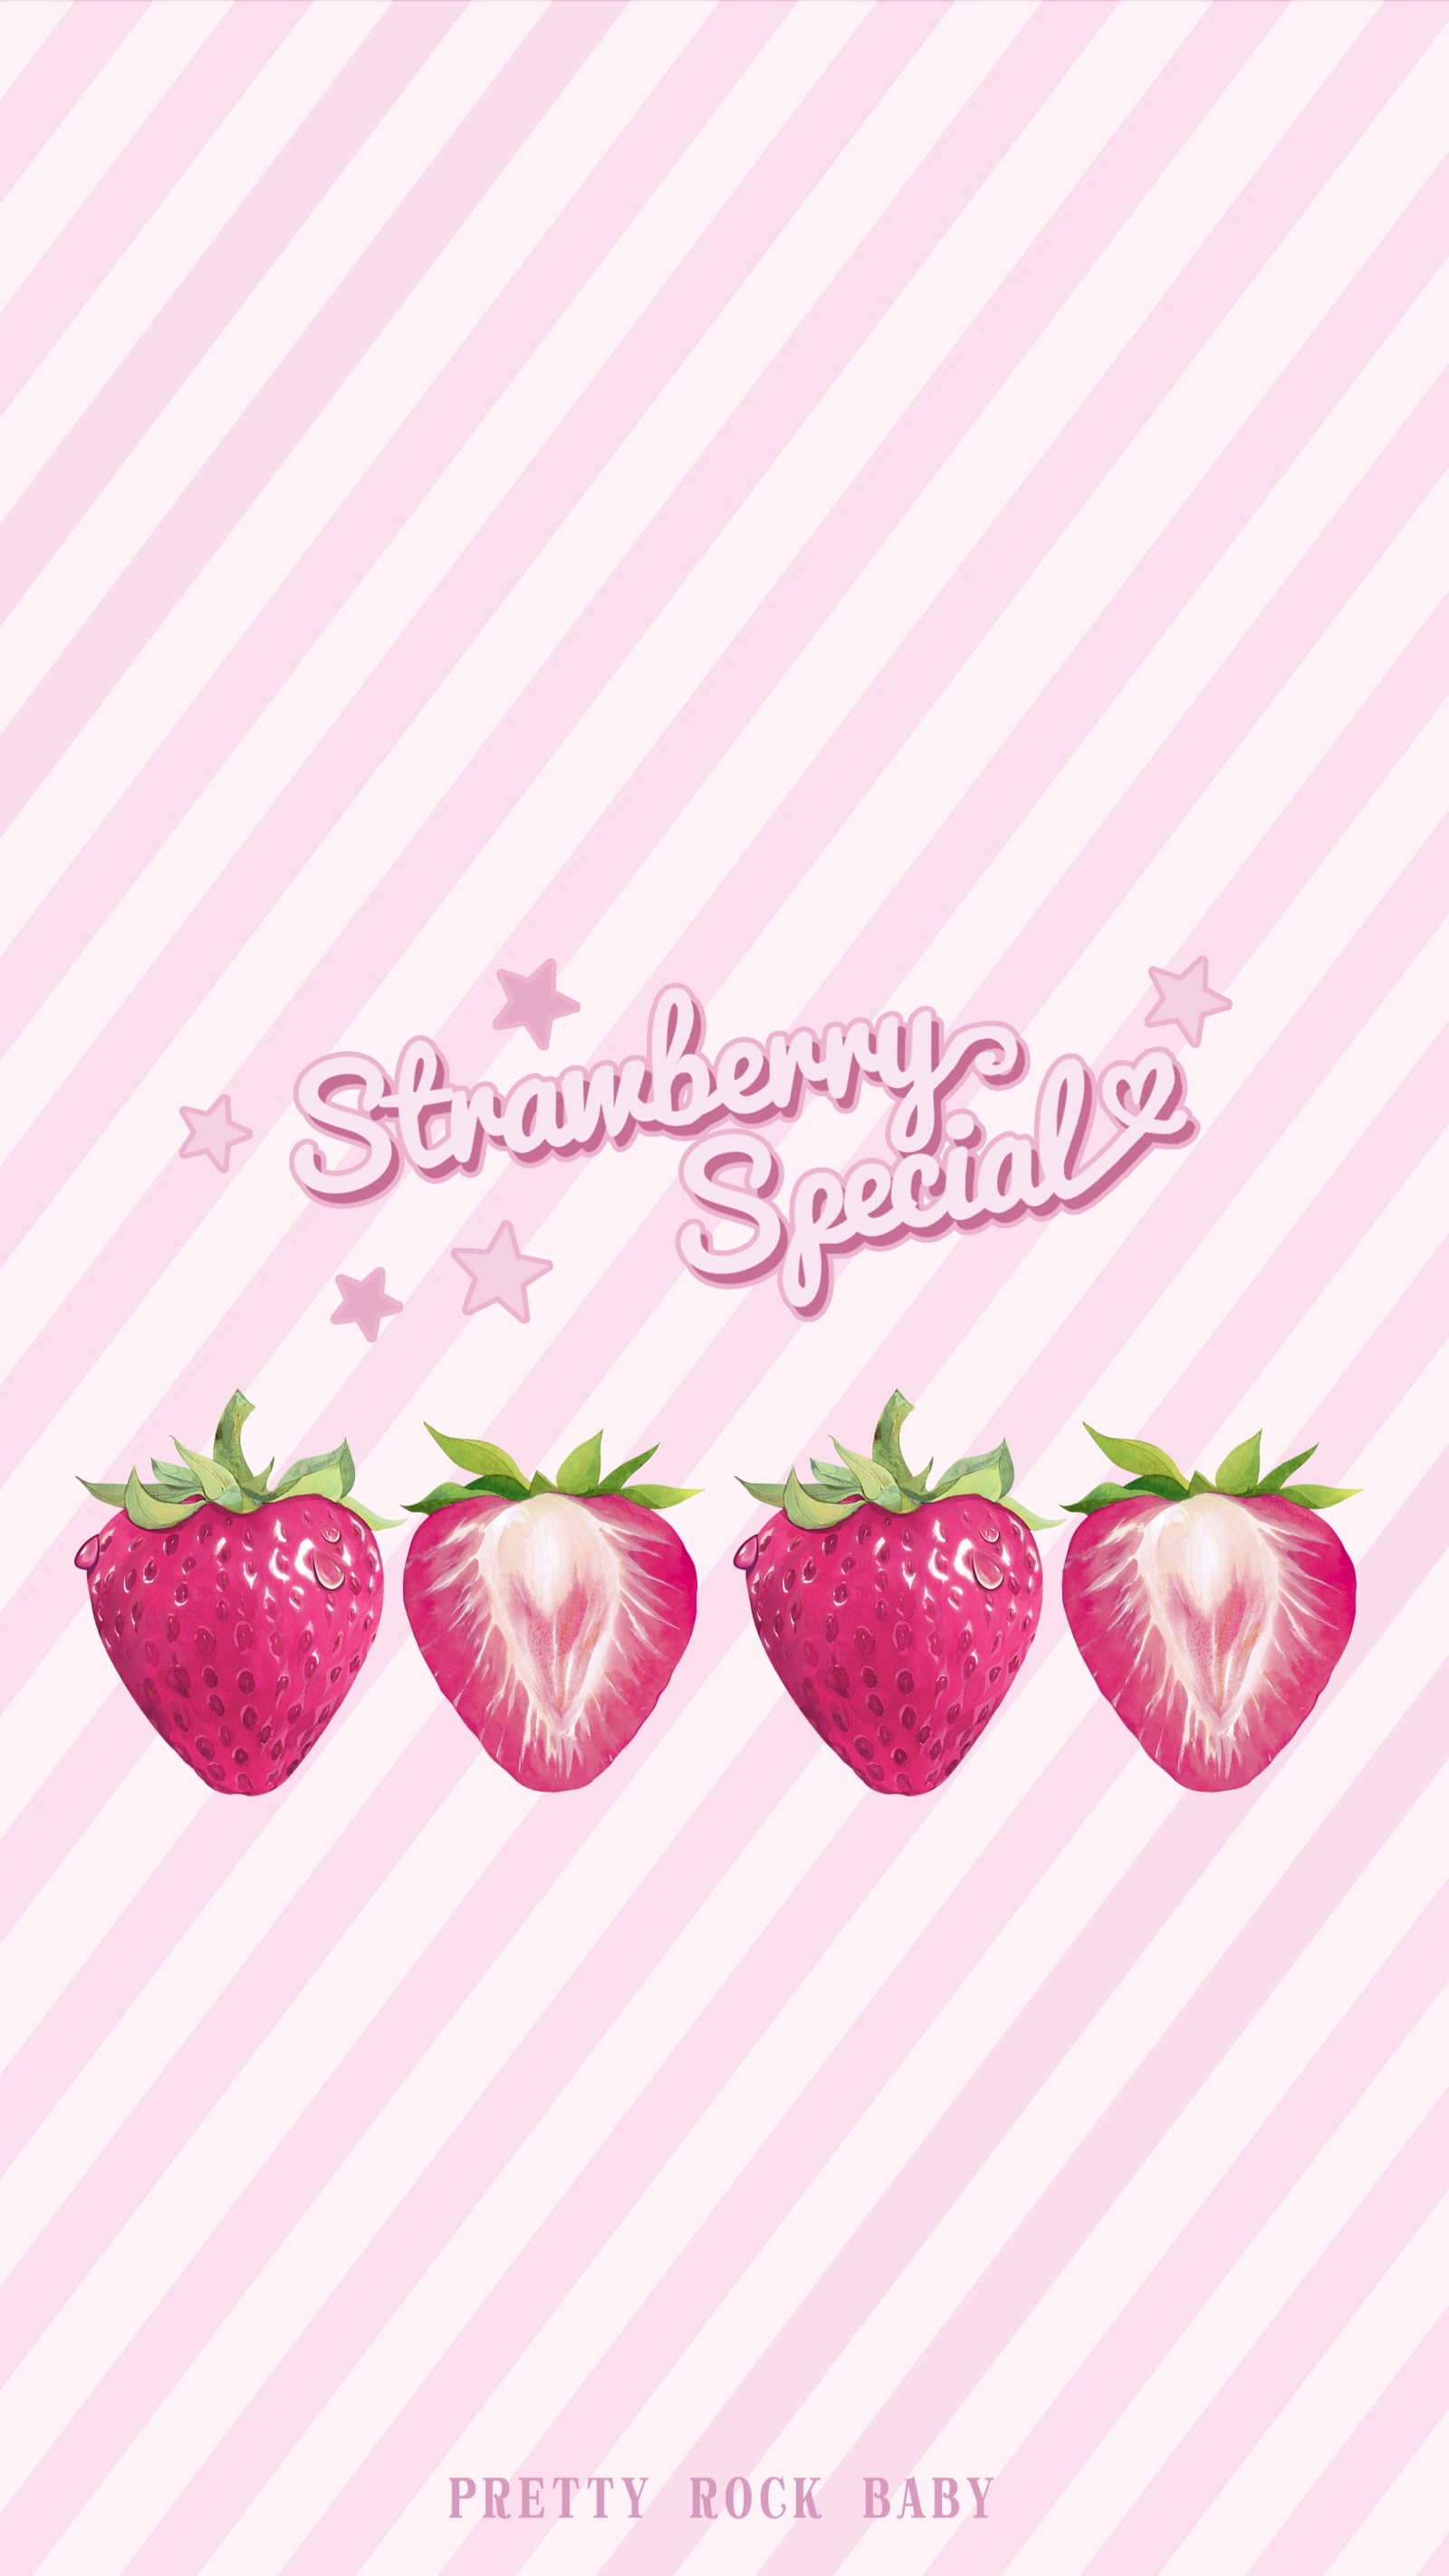 日系牛奶草莓卡通壁纸图片